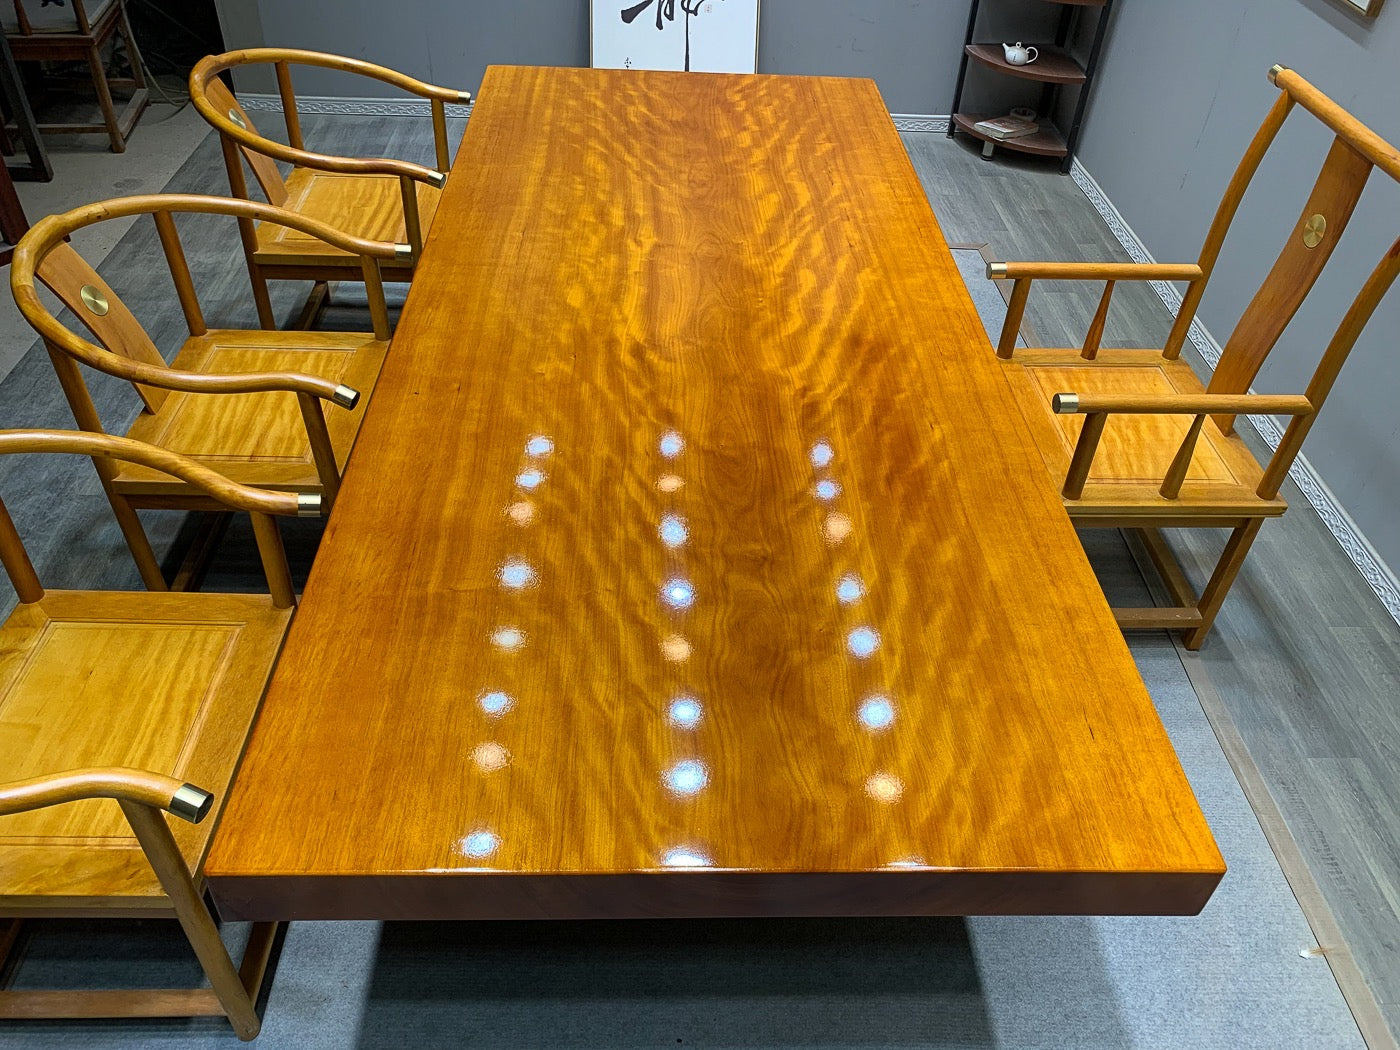 طاولة بلاطة يابانية وجراحة، طاولة مطبخ خشبية